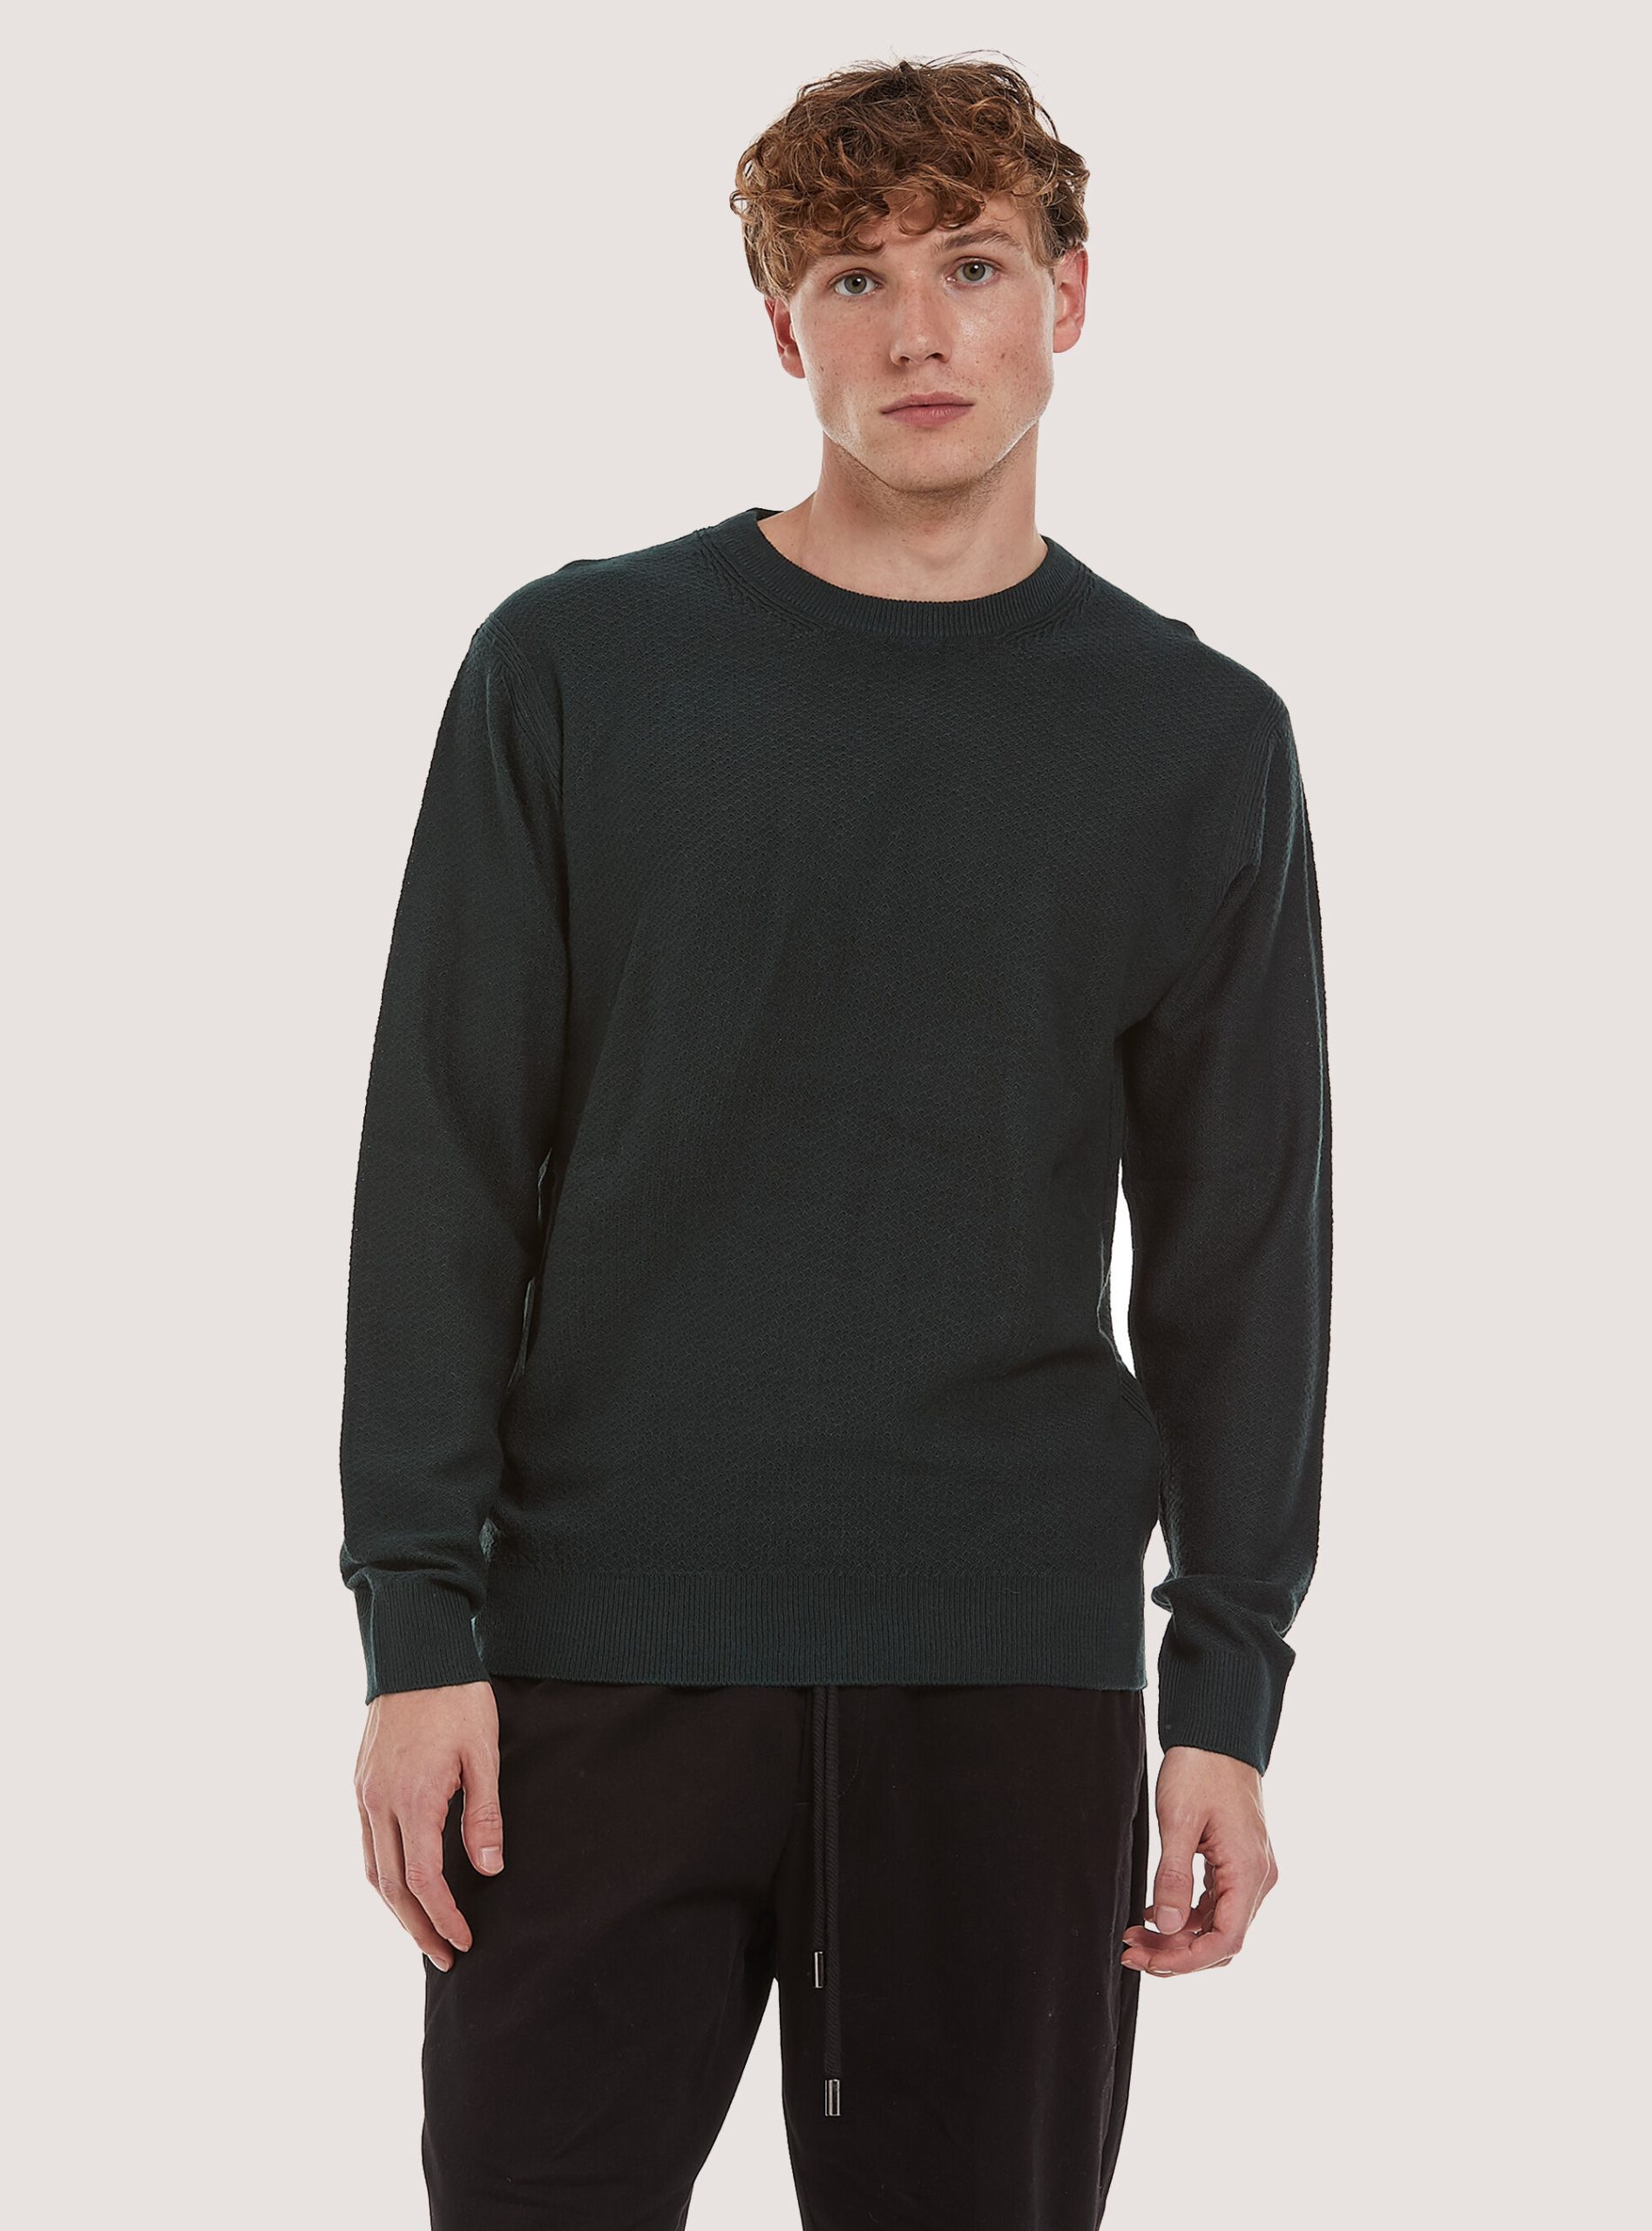 Gn1 Green Dark Kaufen Alcott Männer Crew-Neck Pullover With Texture Strickwaren – 1